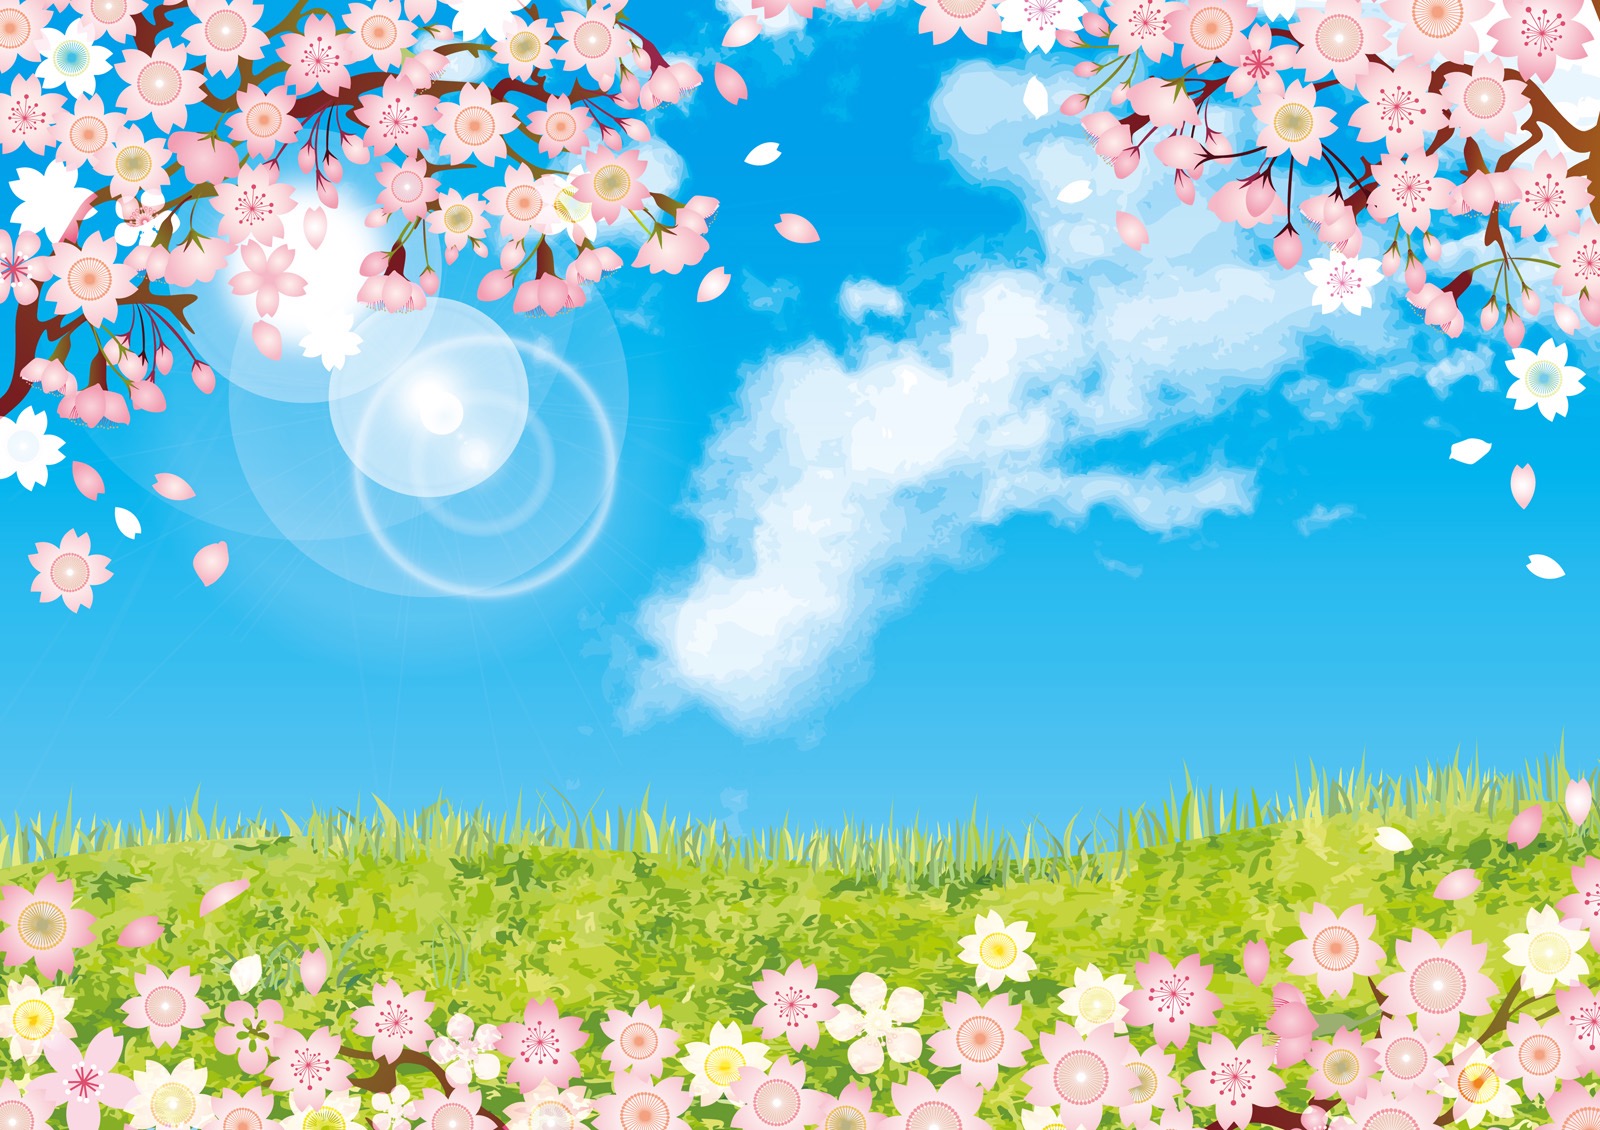 4月8日は草津市のロクハ公園で「さくらまつり」が開催！桜舞うロクハ公園でたっぷり遊ぼう♪